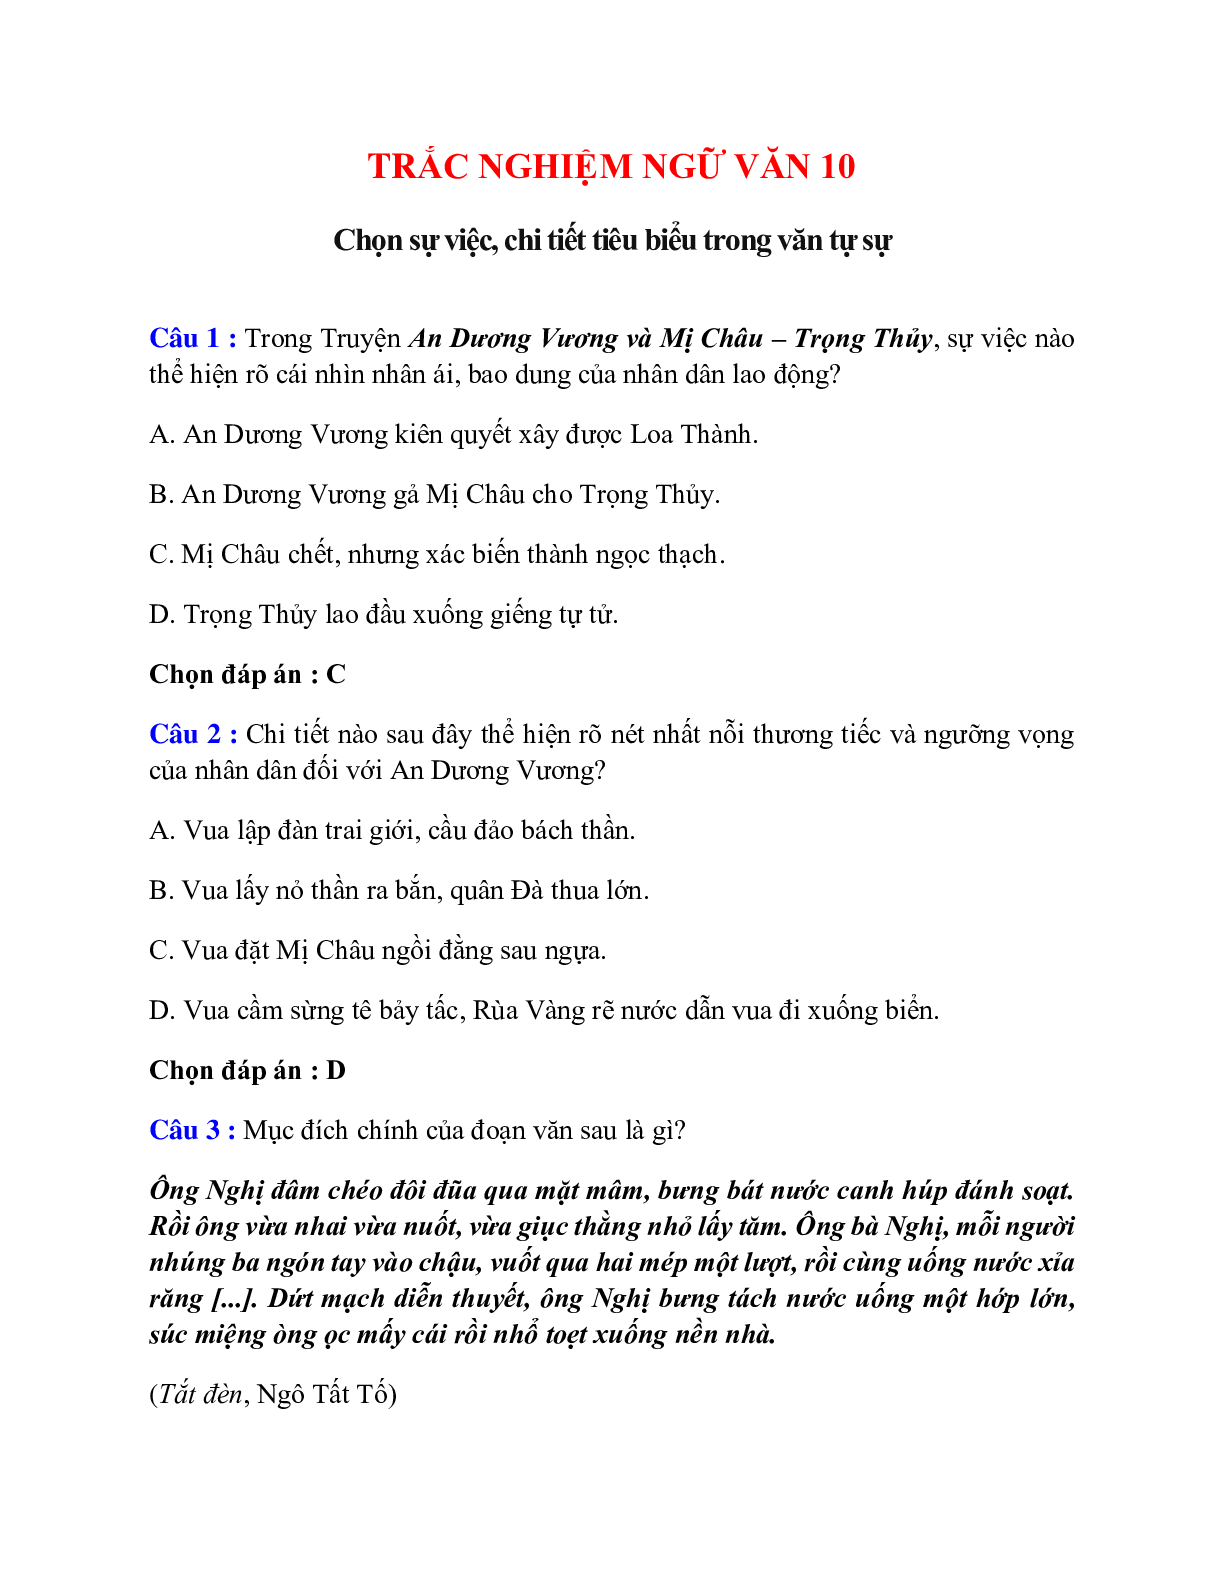 Trắc nghiệm Chọn sự việc, chi tiết tiêu biểu trong văn tự sự có đáp án – Ngữ văn lớp 10 (trang 1)